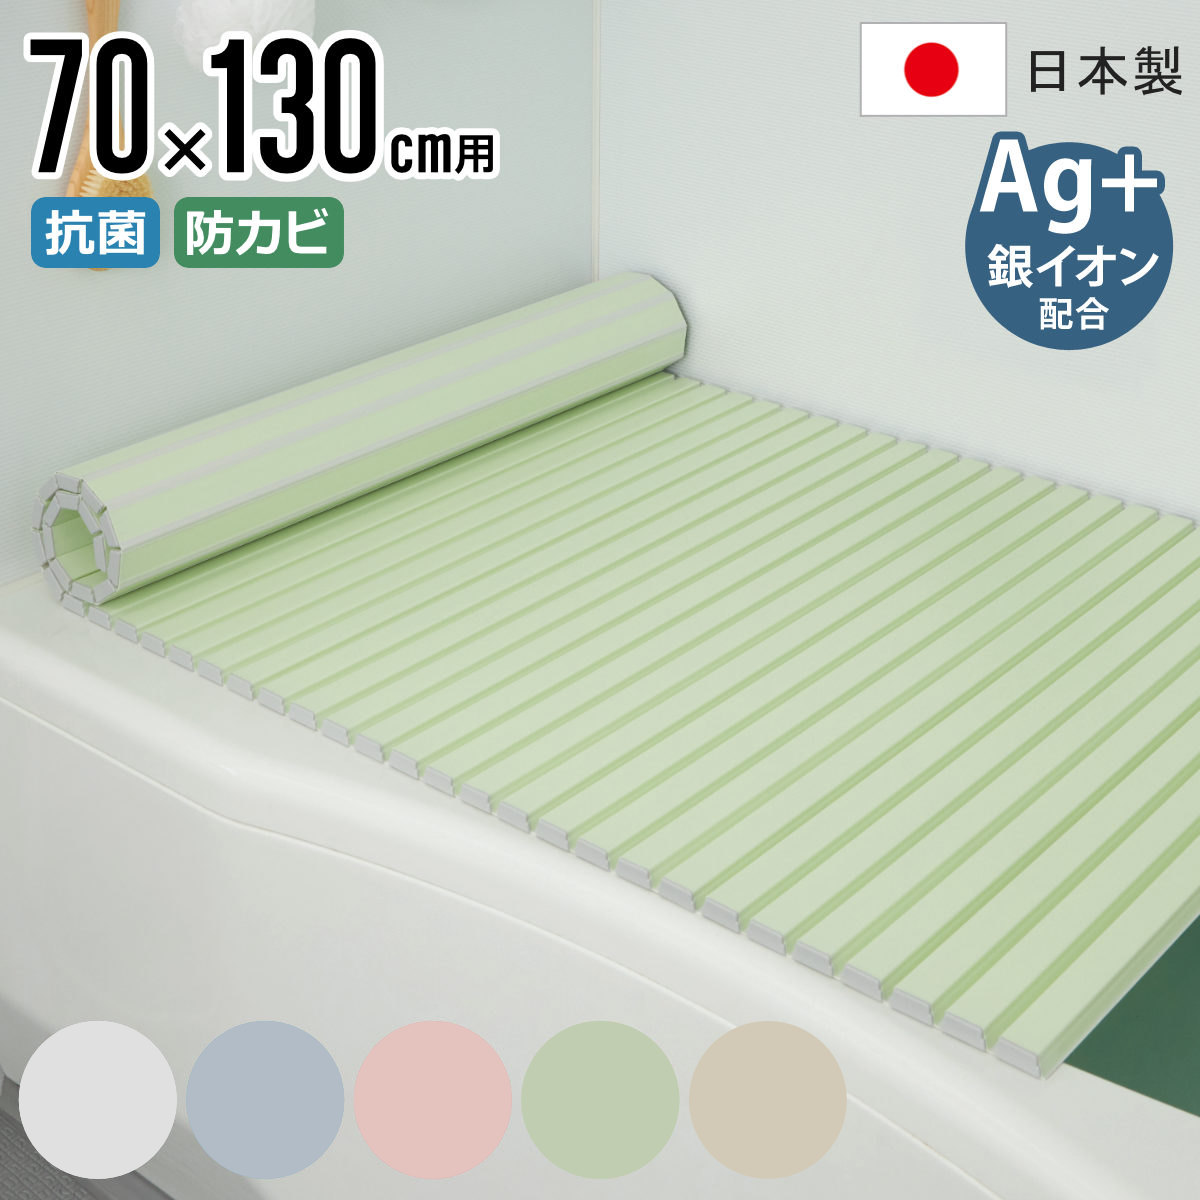 風呂ふた シャッター Ag抗菌 日本製 70×130cm 用 M-13 実寸70×132cm